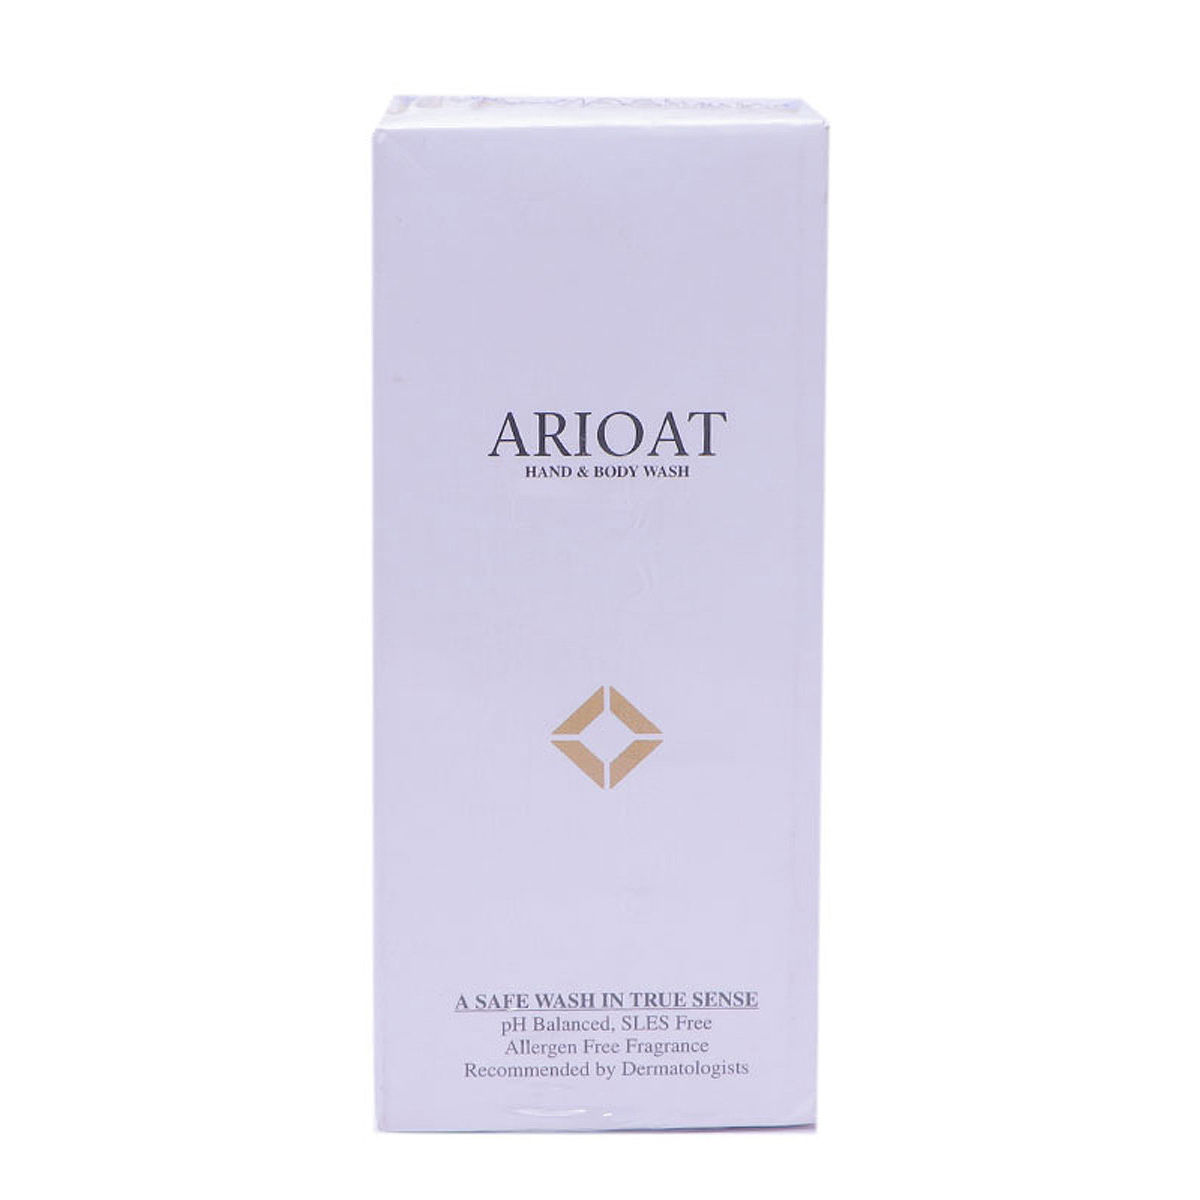 Buy Arioat Hand & Body Wash, 300 ml Online